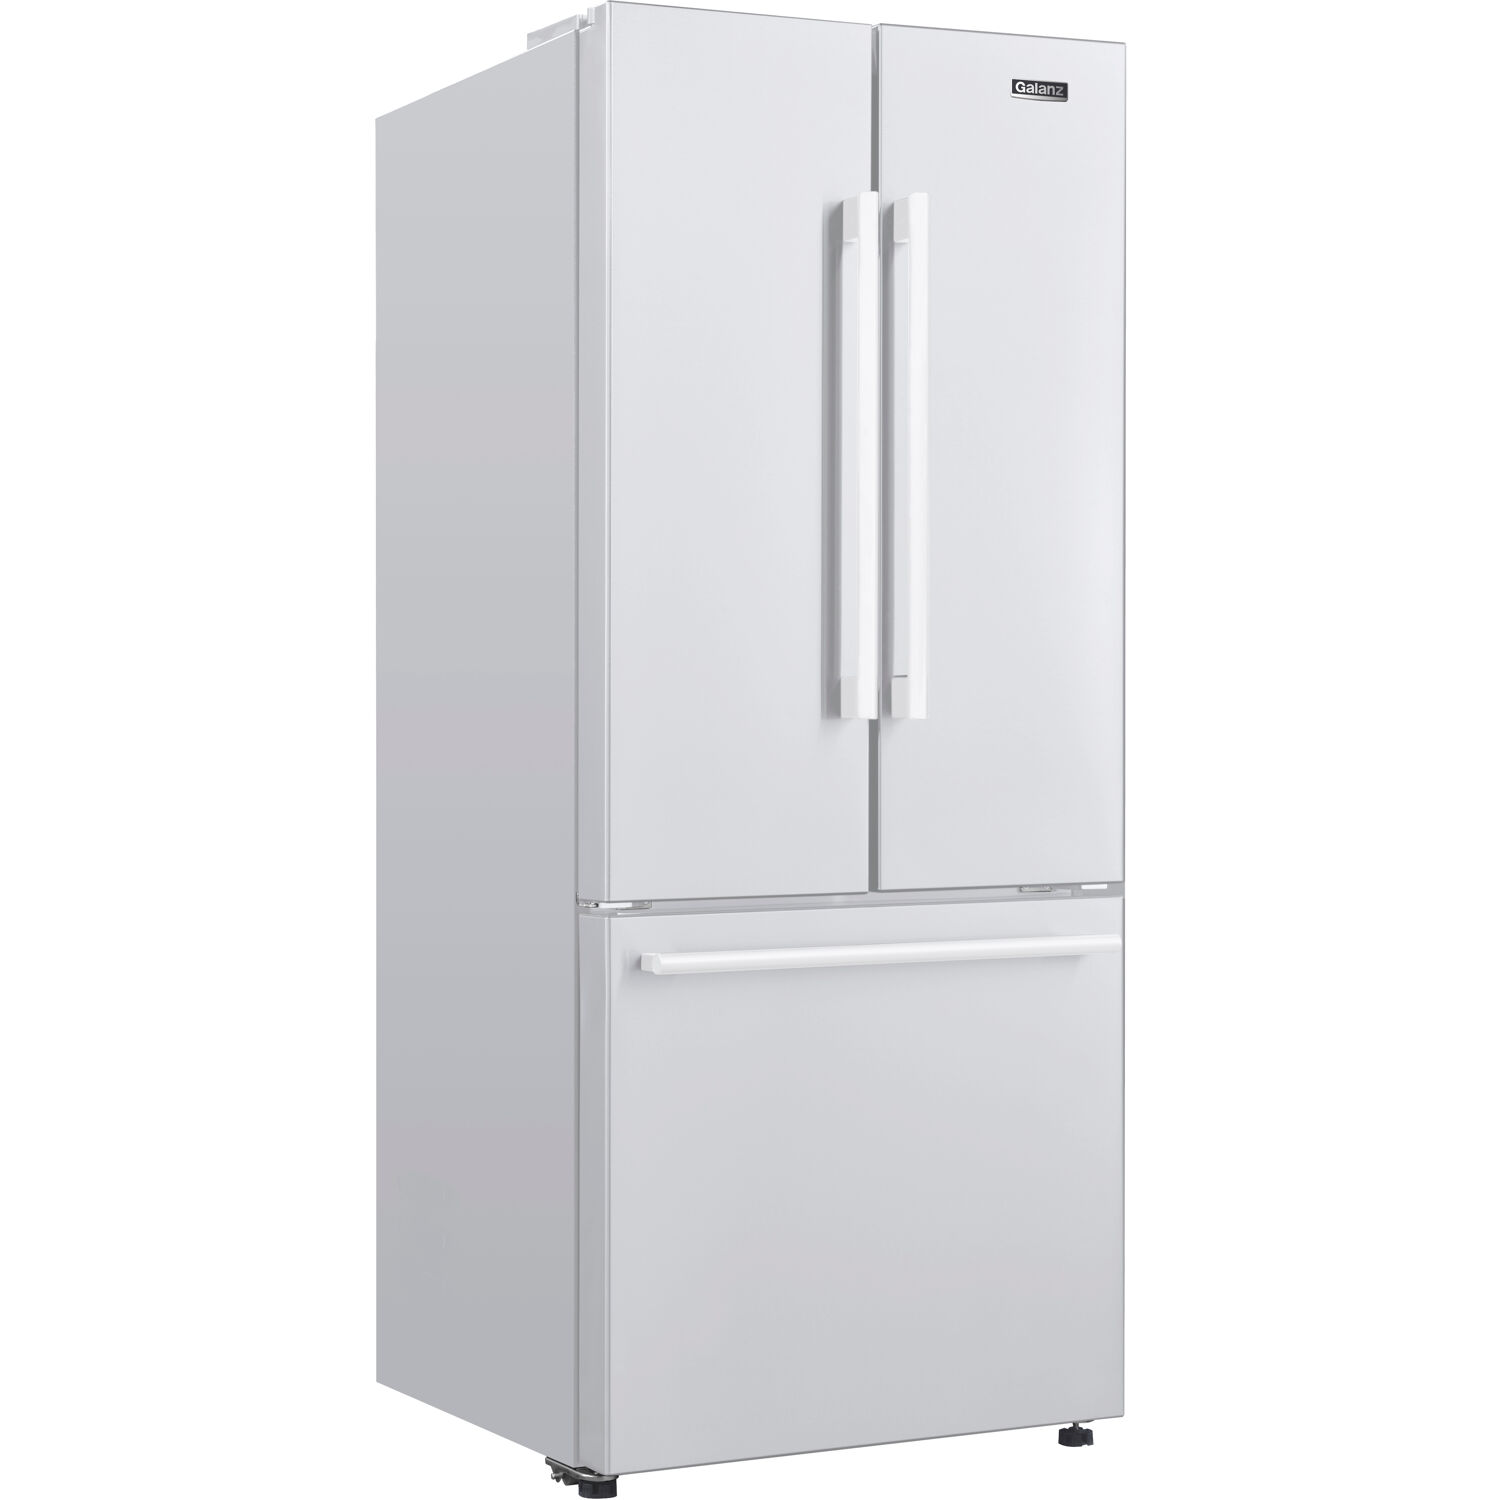 Galanz 16 cu. ft. 3-Door French Door Refrigerator, White, 28.35" Wide - image 1 of 6